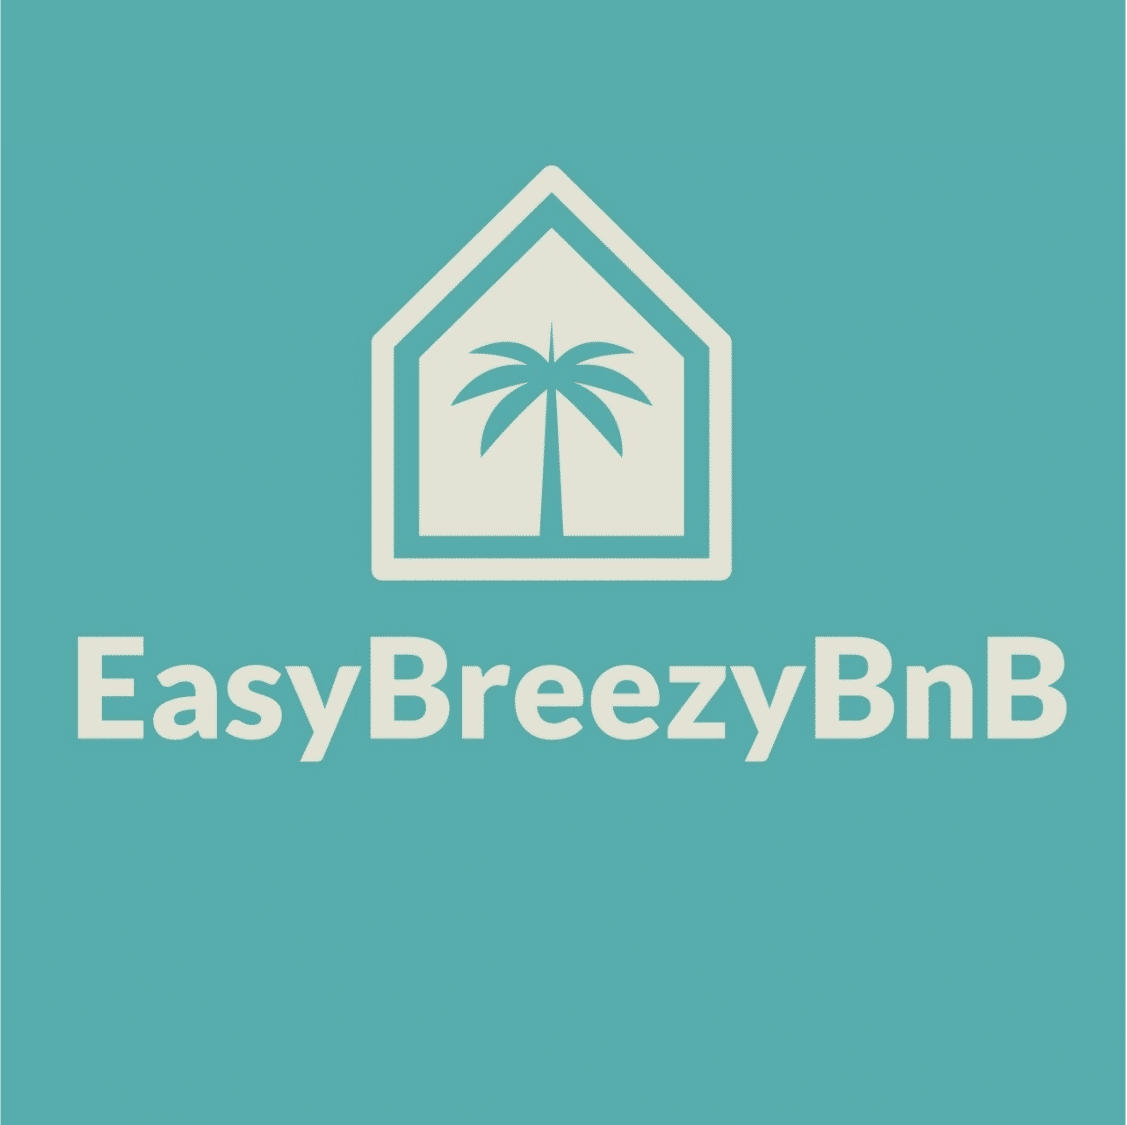 EasyBreezy BnB